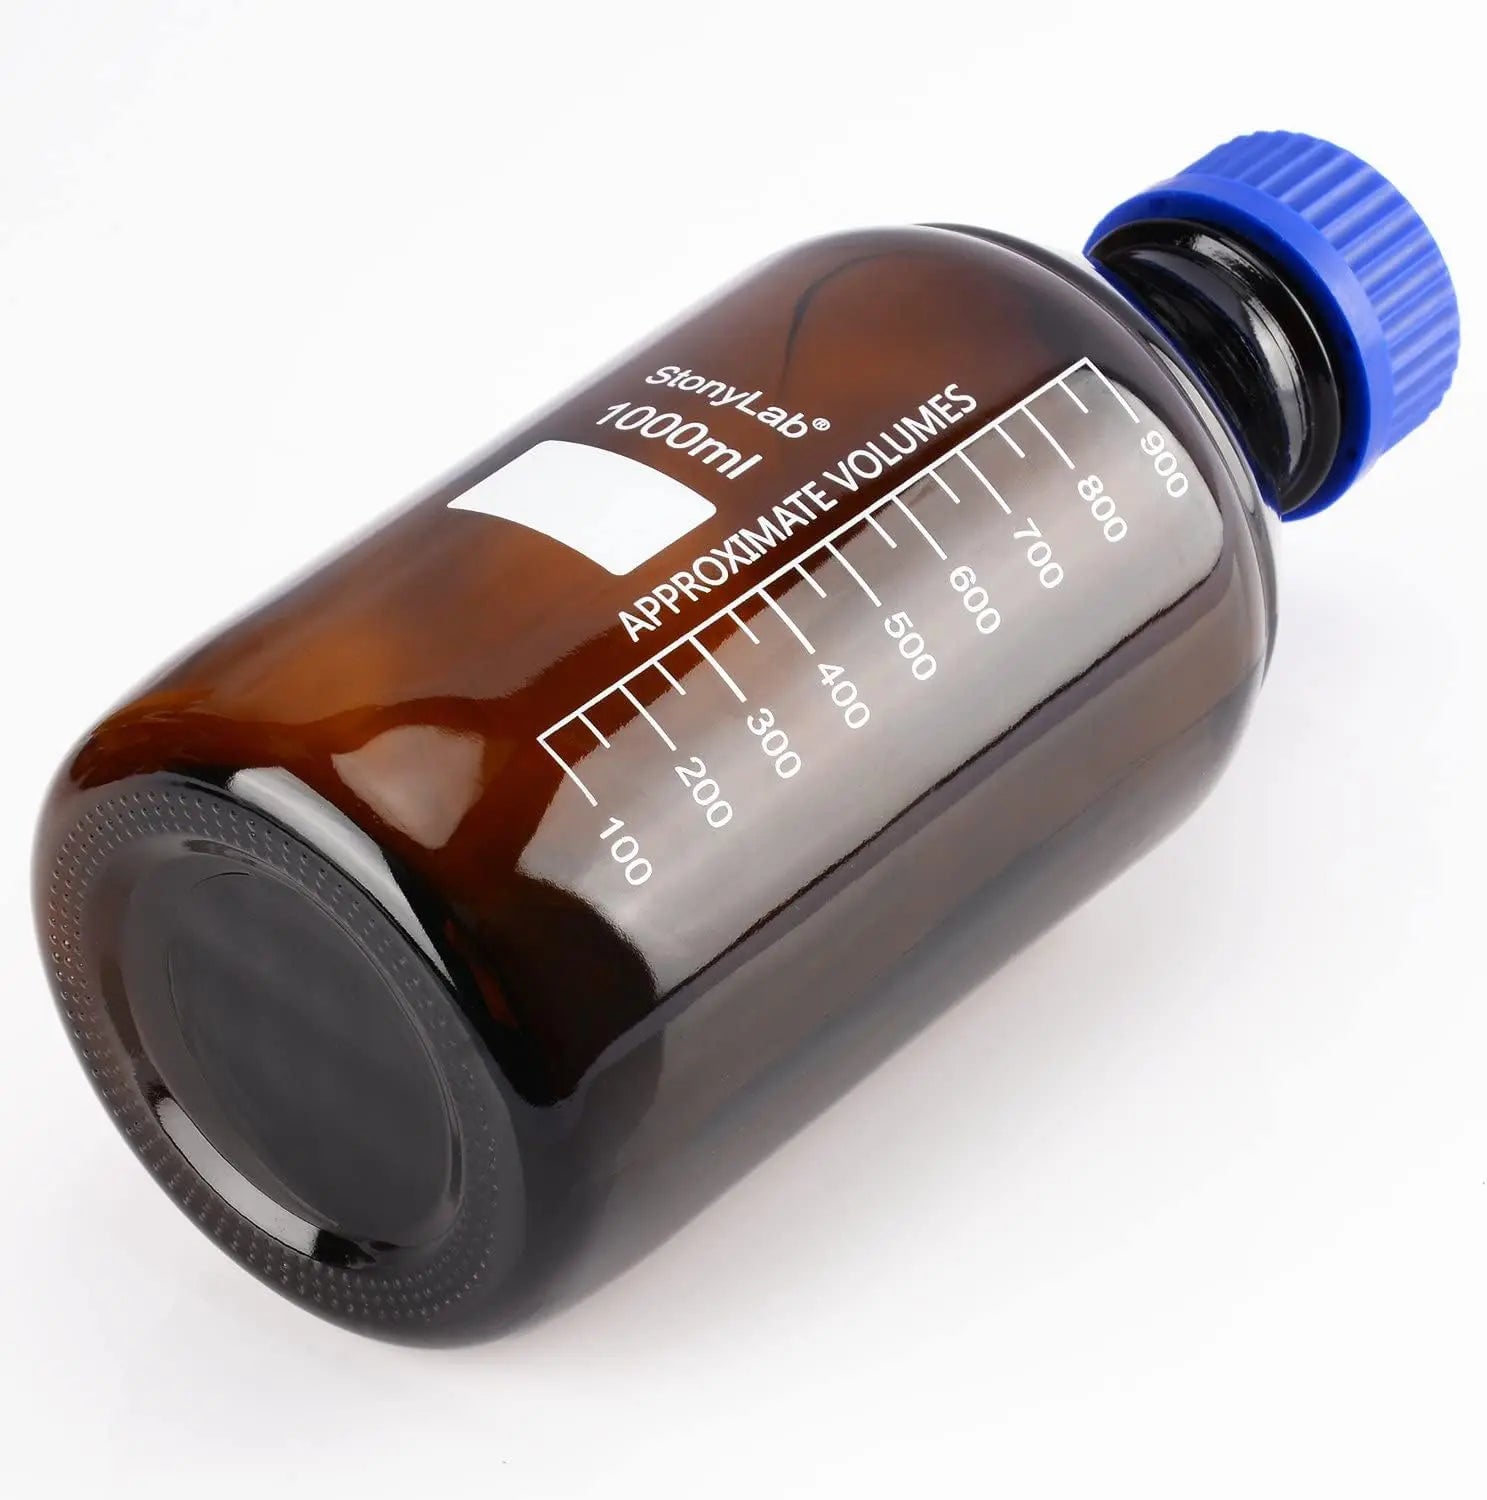 Amber Round Media Storage Bottles with GL45 Blue Screw Cap,250-2000 ml Storage Bottles